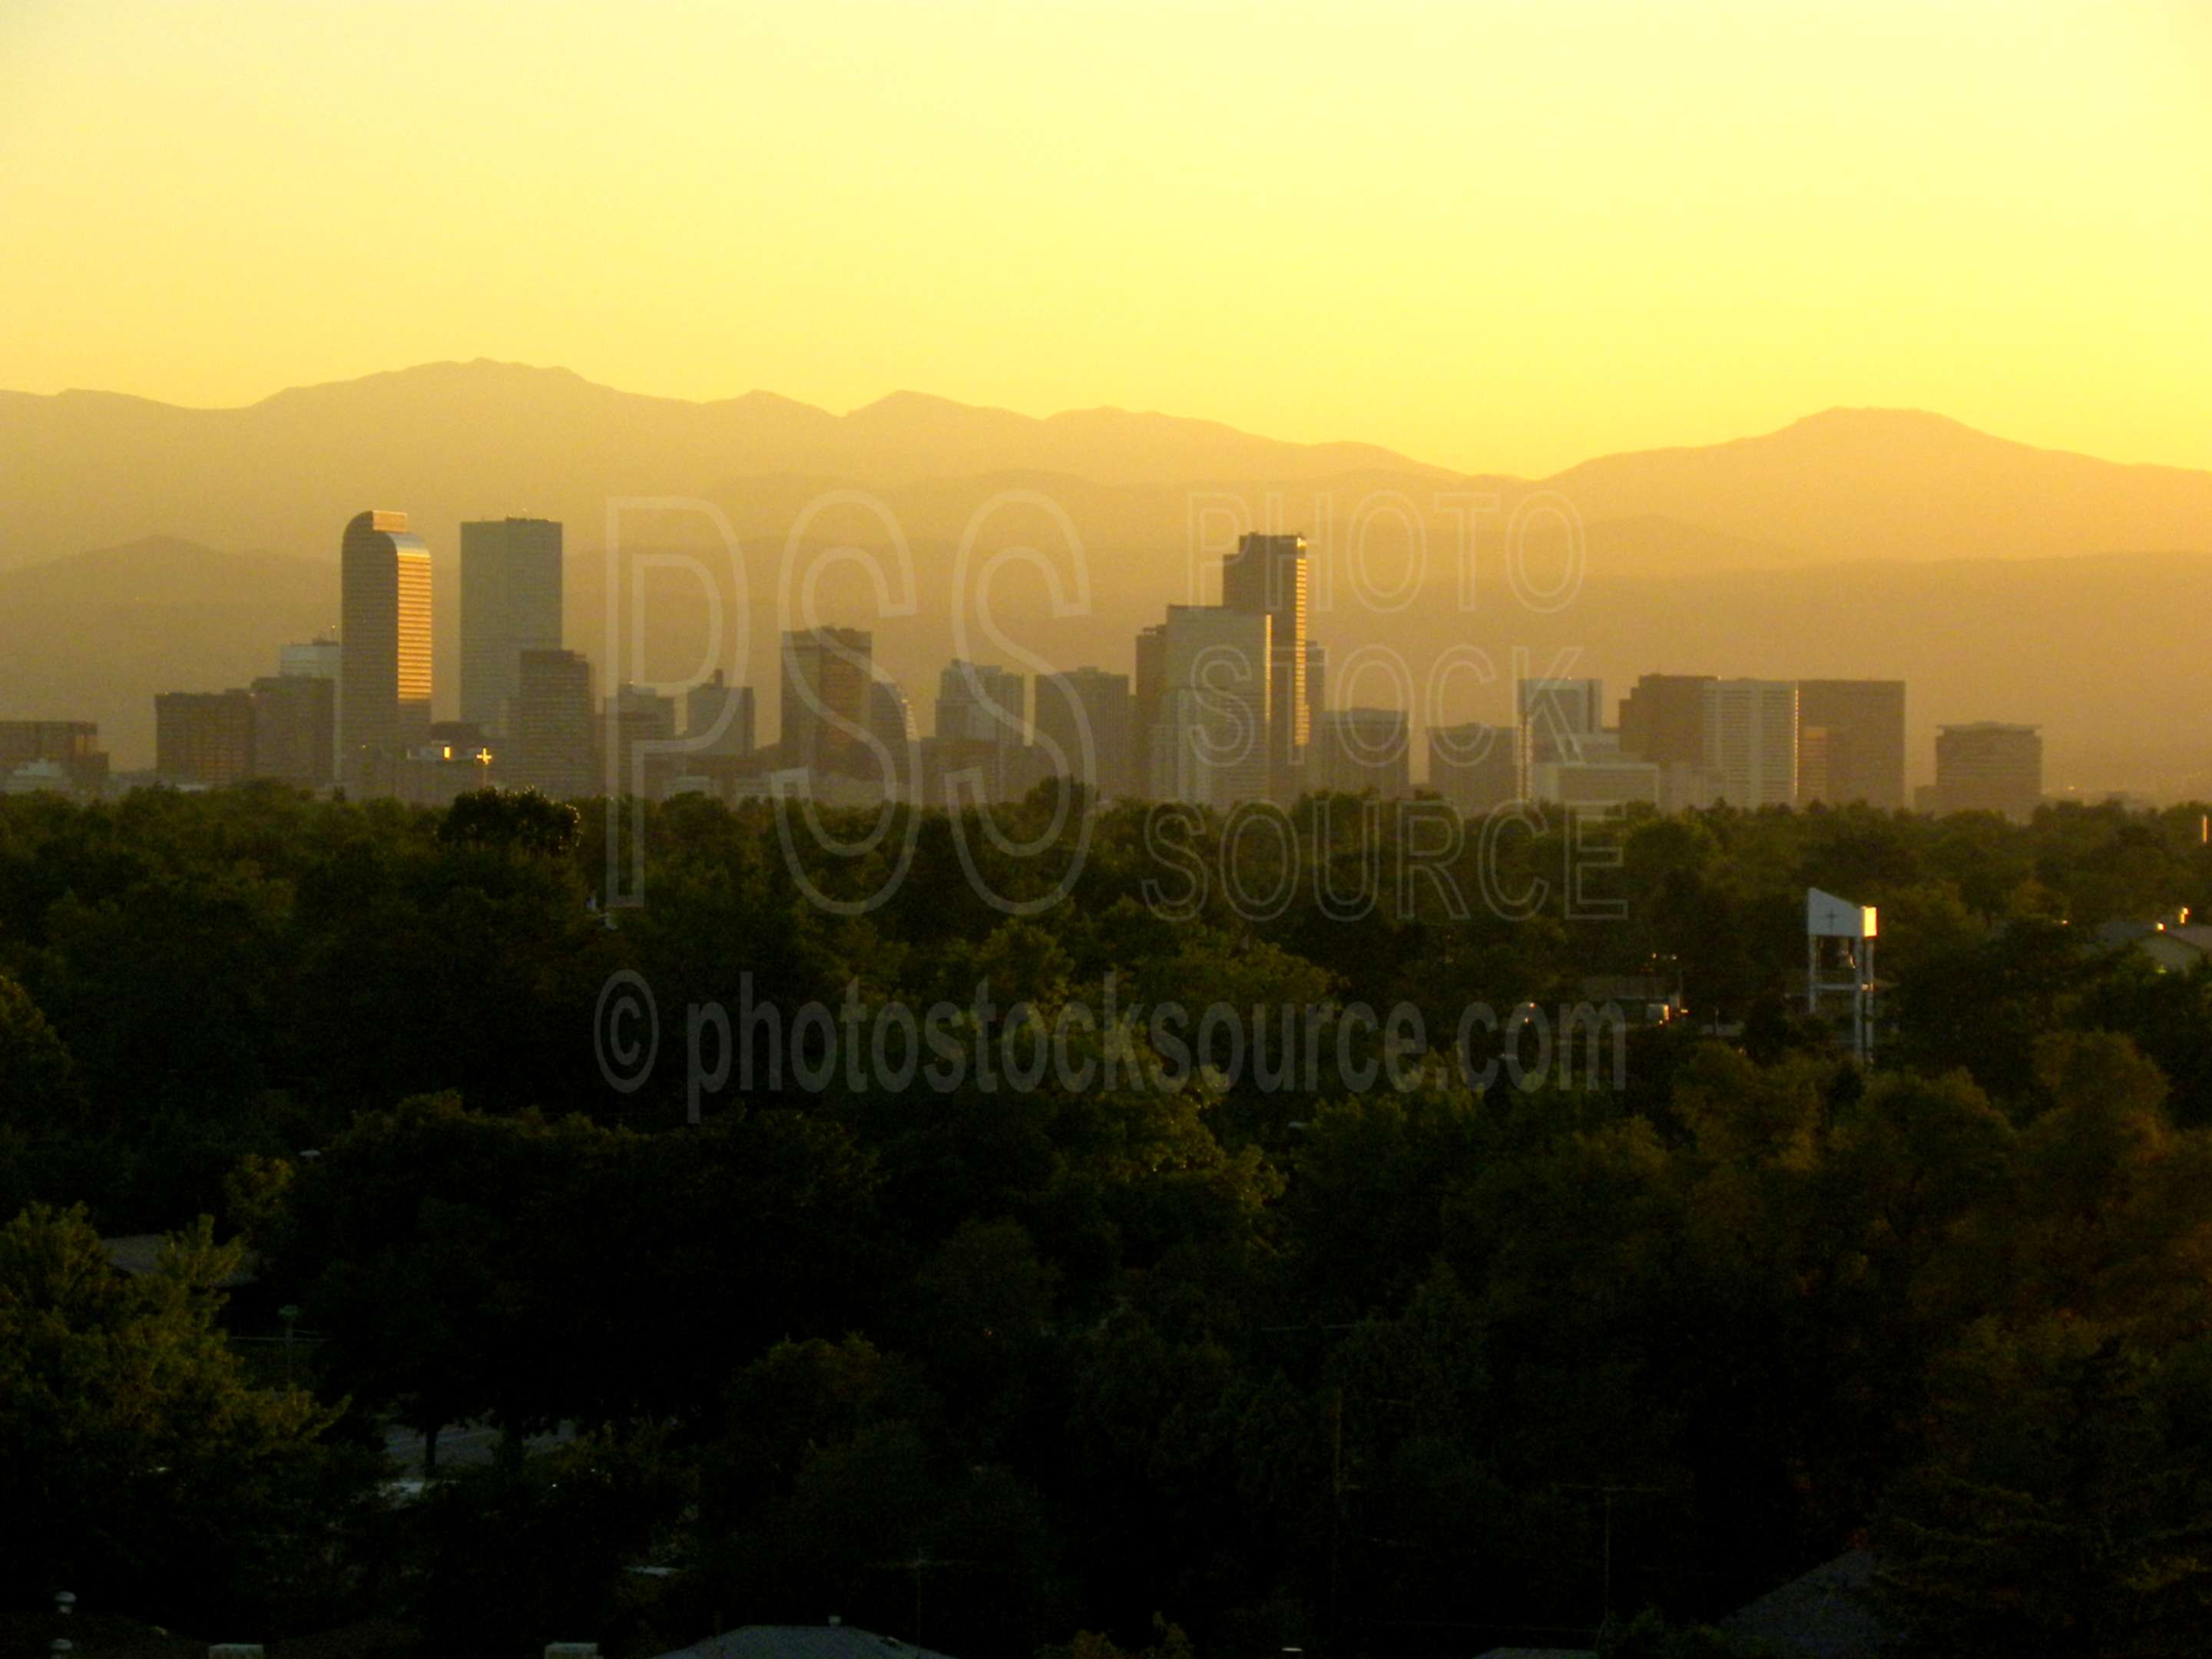 Denver at Sunset,city,skyline,rocky mountains,sunset,haze